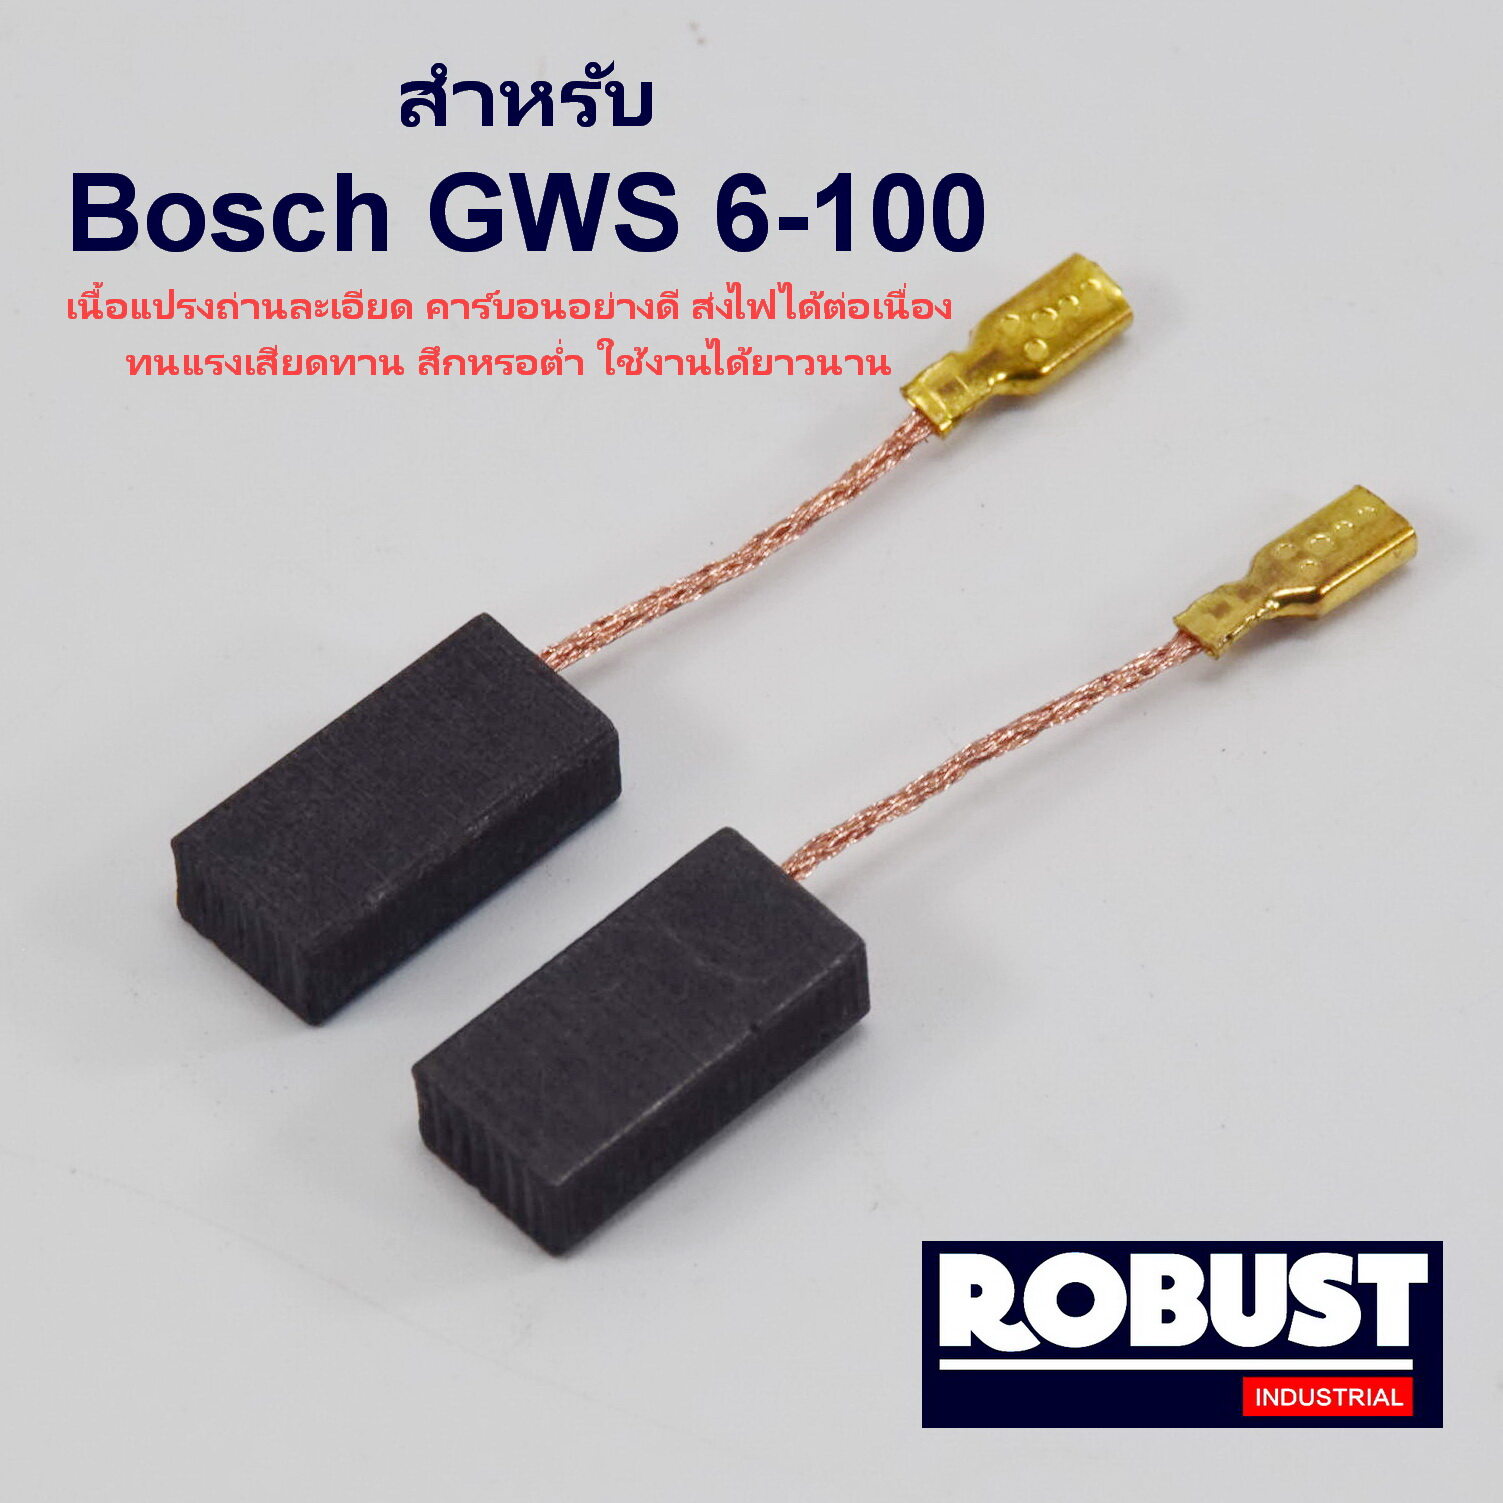 แปรงถ่าน สำหรับ Bosch GWS 6-100 , 5-100 , 8-100 , GWS060 , GWS900-100 เนื้อแปรงถ่านละเอียด ส่งไฟได้ต่อเนื่อง ทนทาน